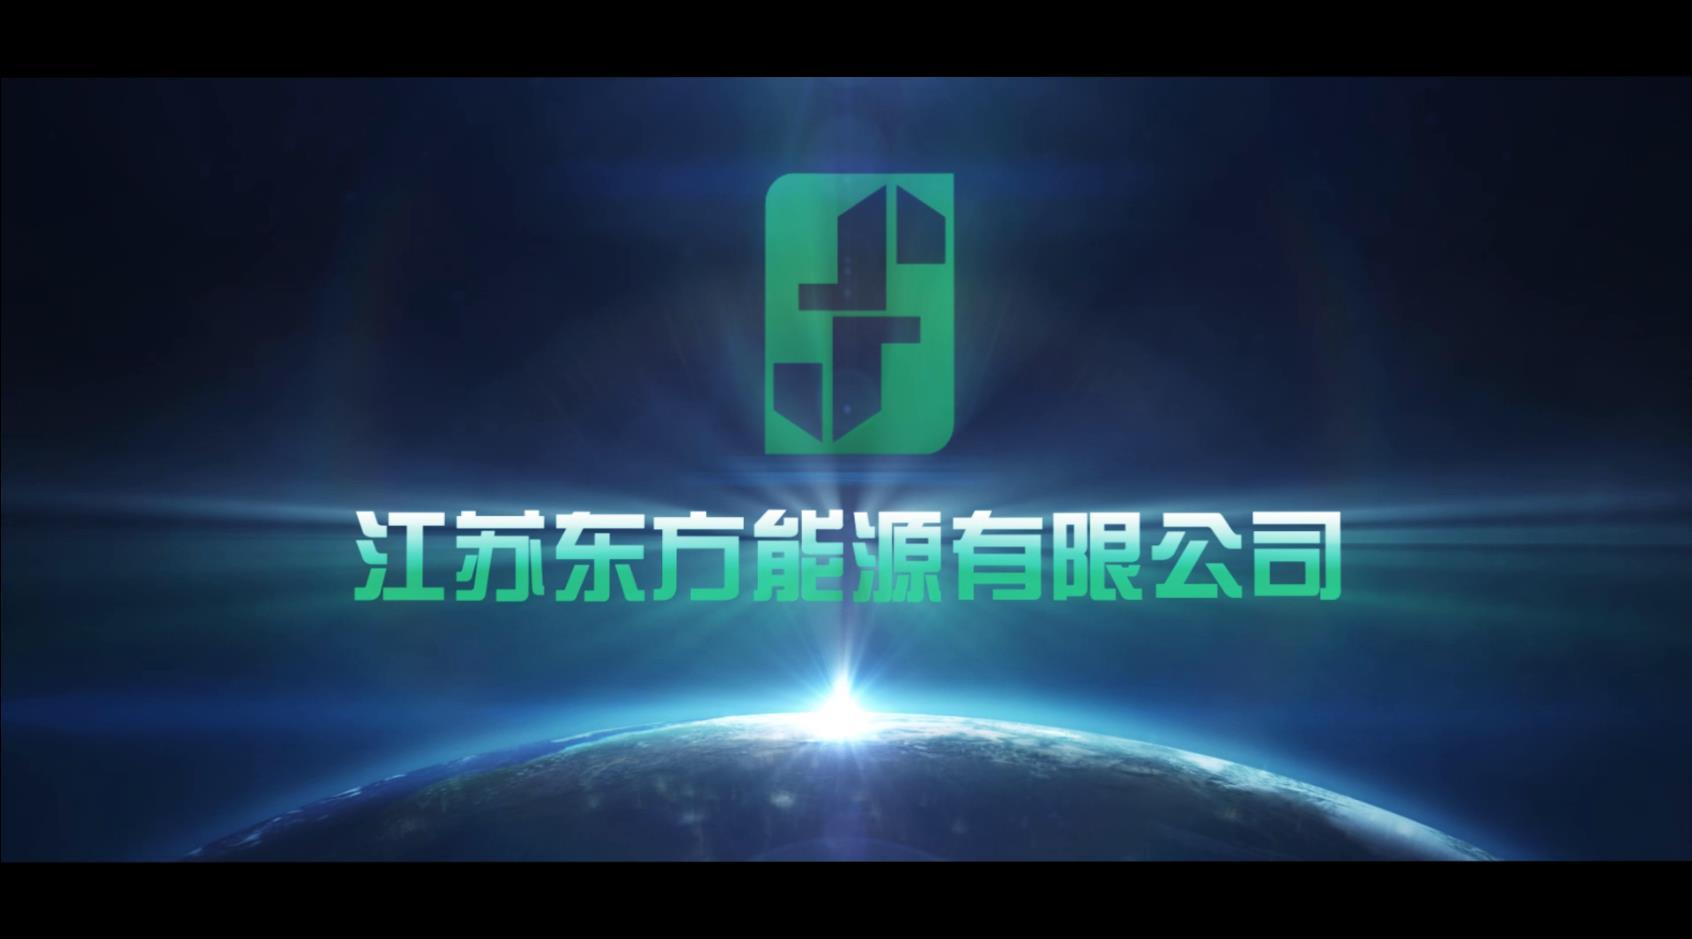 东方能源宣传片 中文版丨星火中视影视